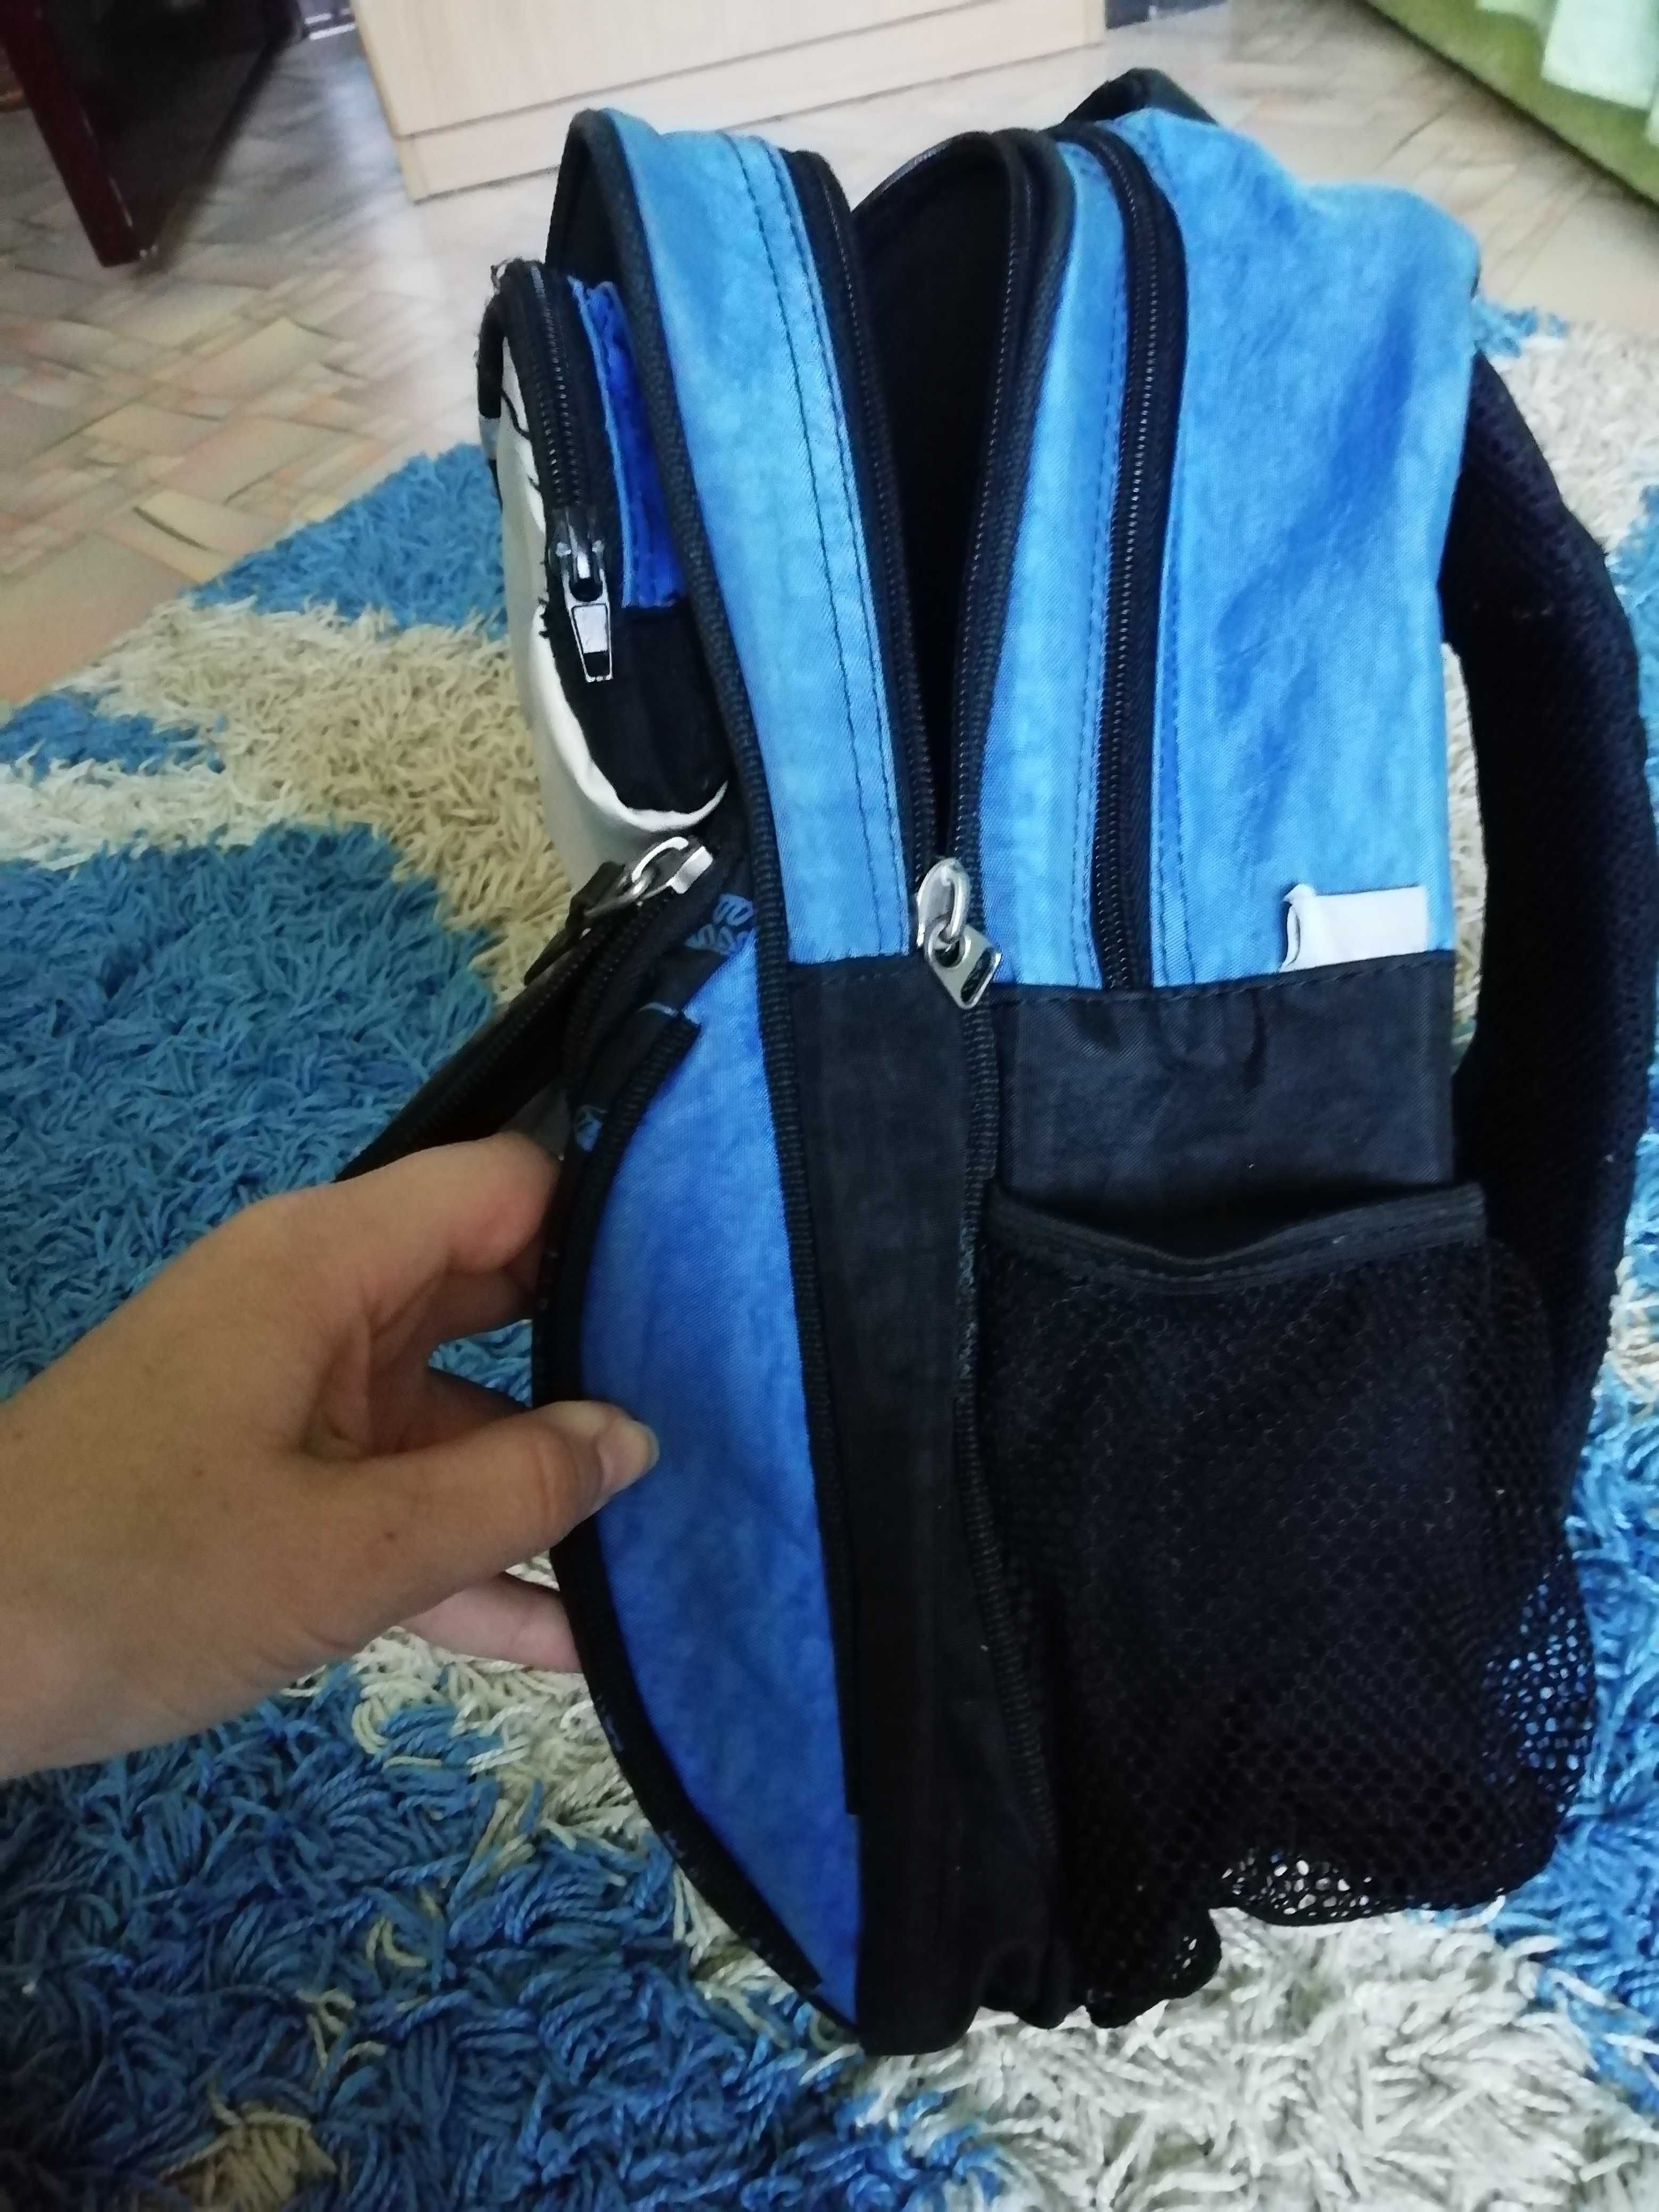 Продам школьный рюкзак